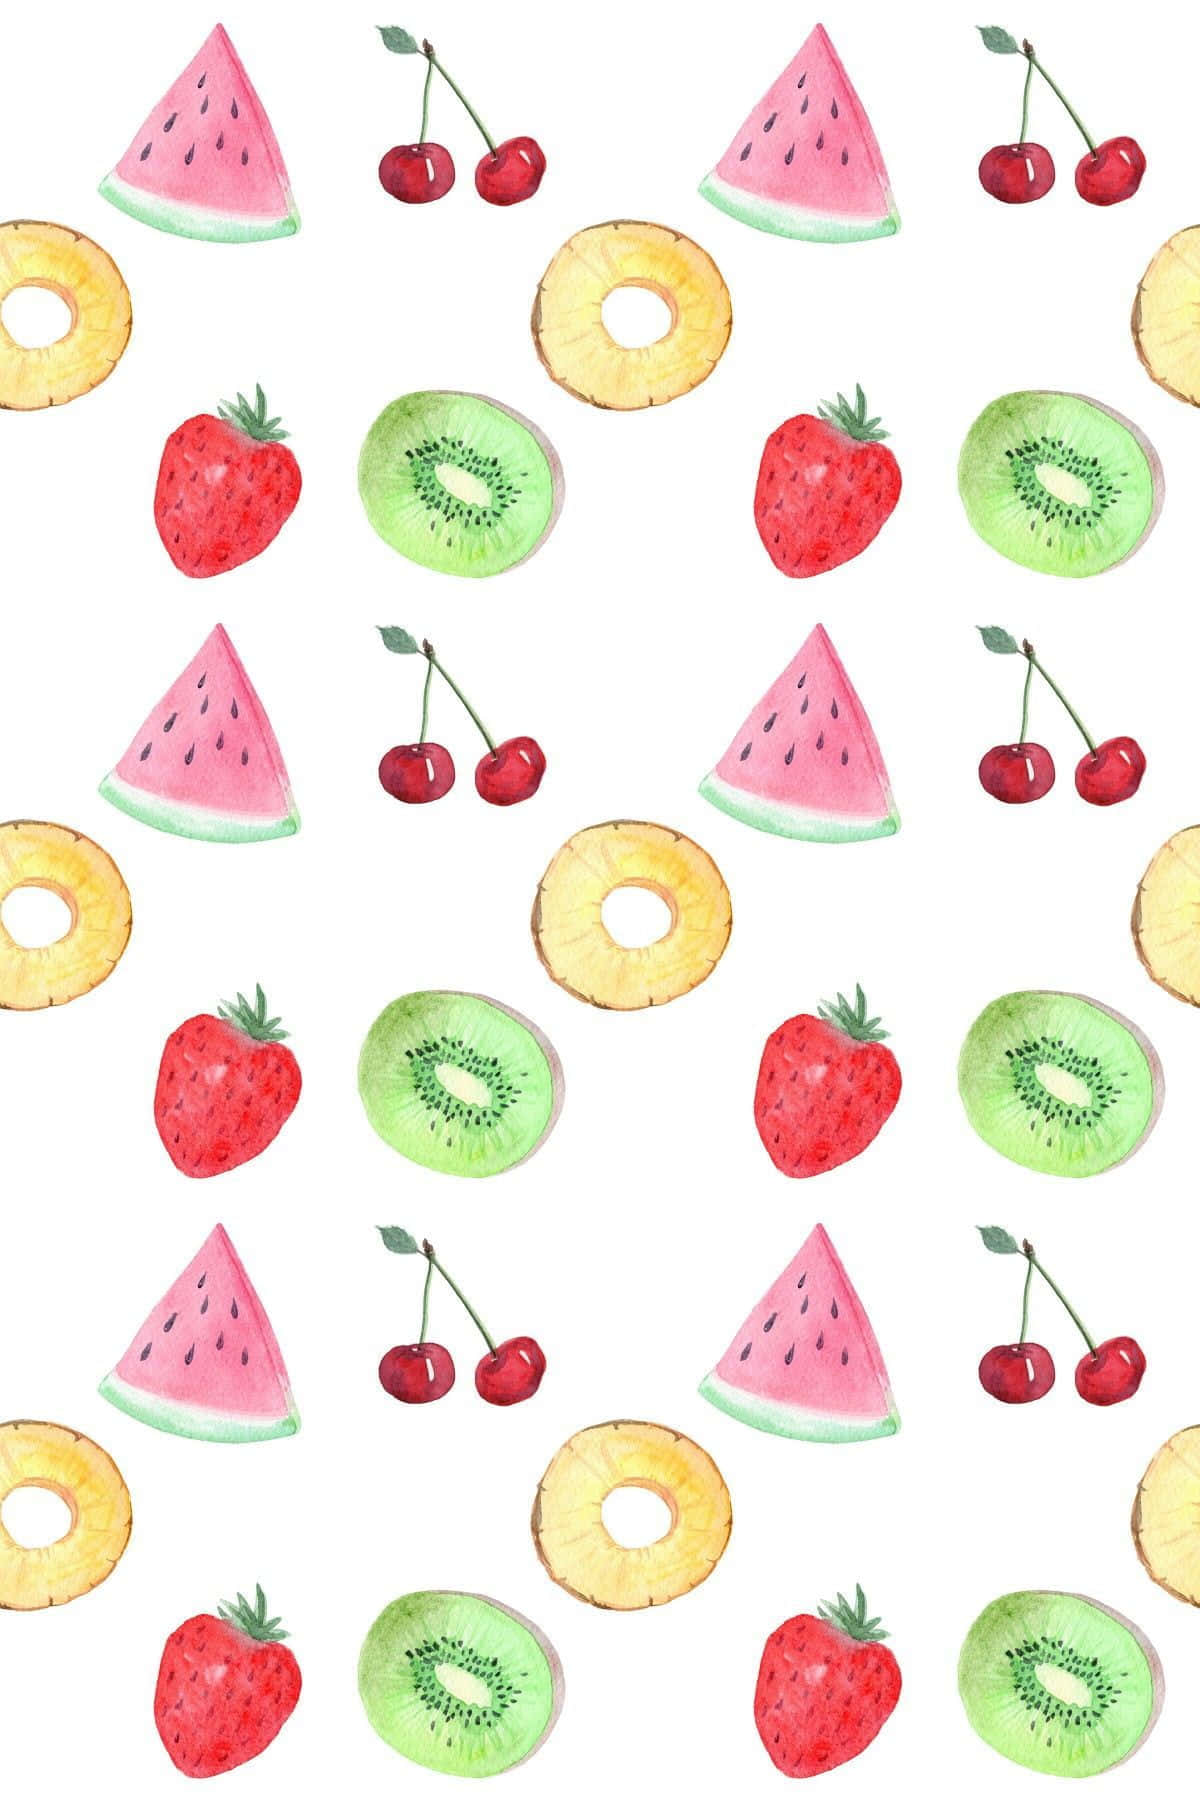 Et mønster af frugt og bær sprøjtet i en lys gul baggrund. Wallpaper